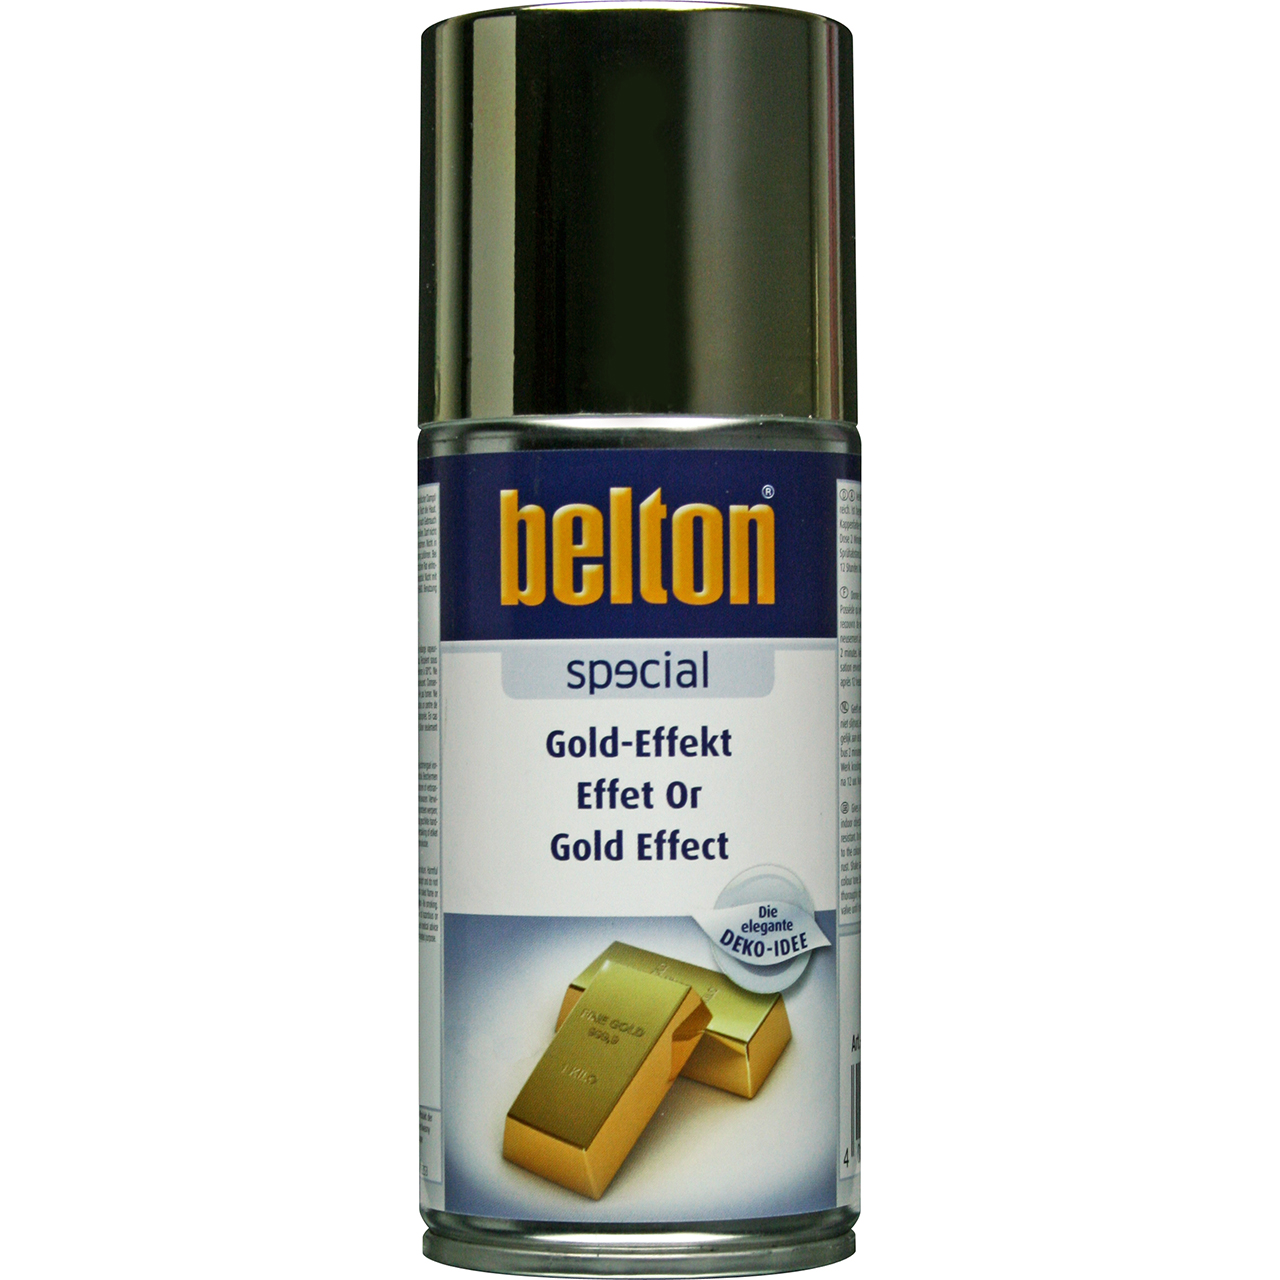 belton Special Gold-Effekt, 150ml